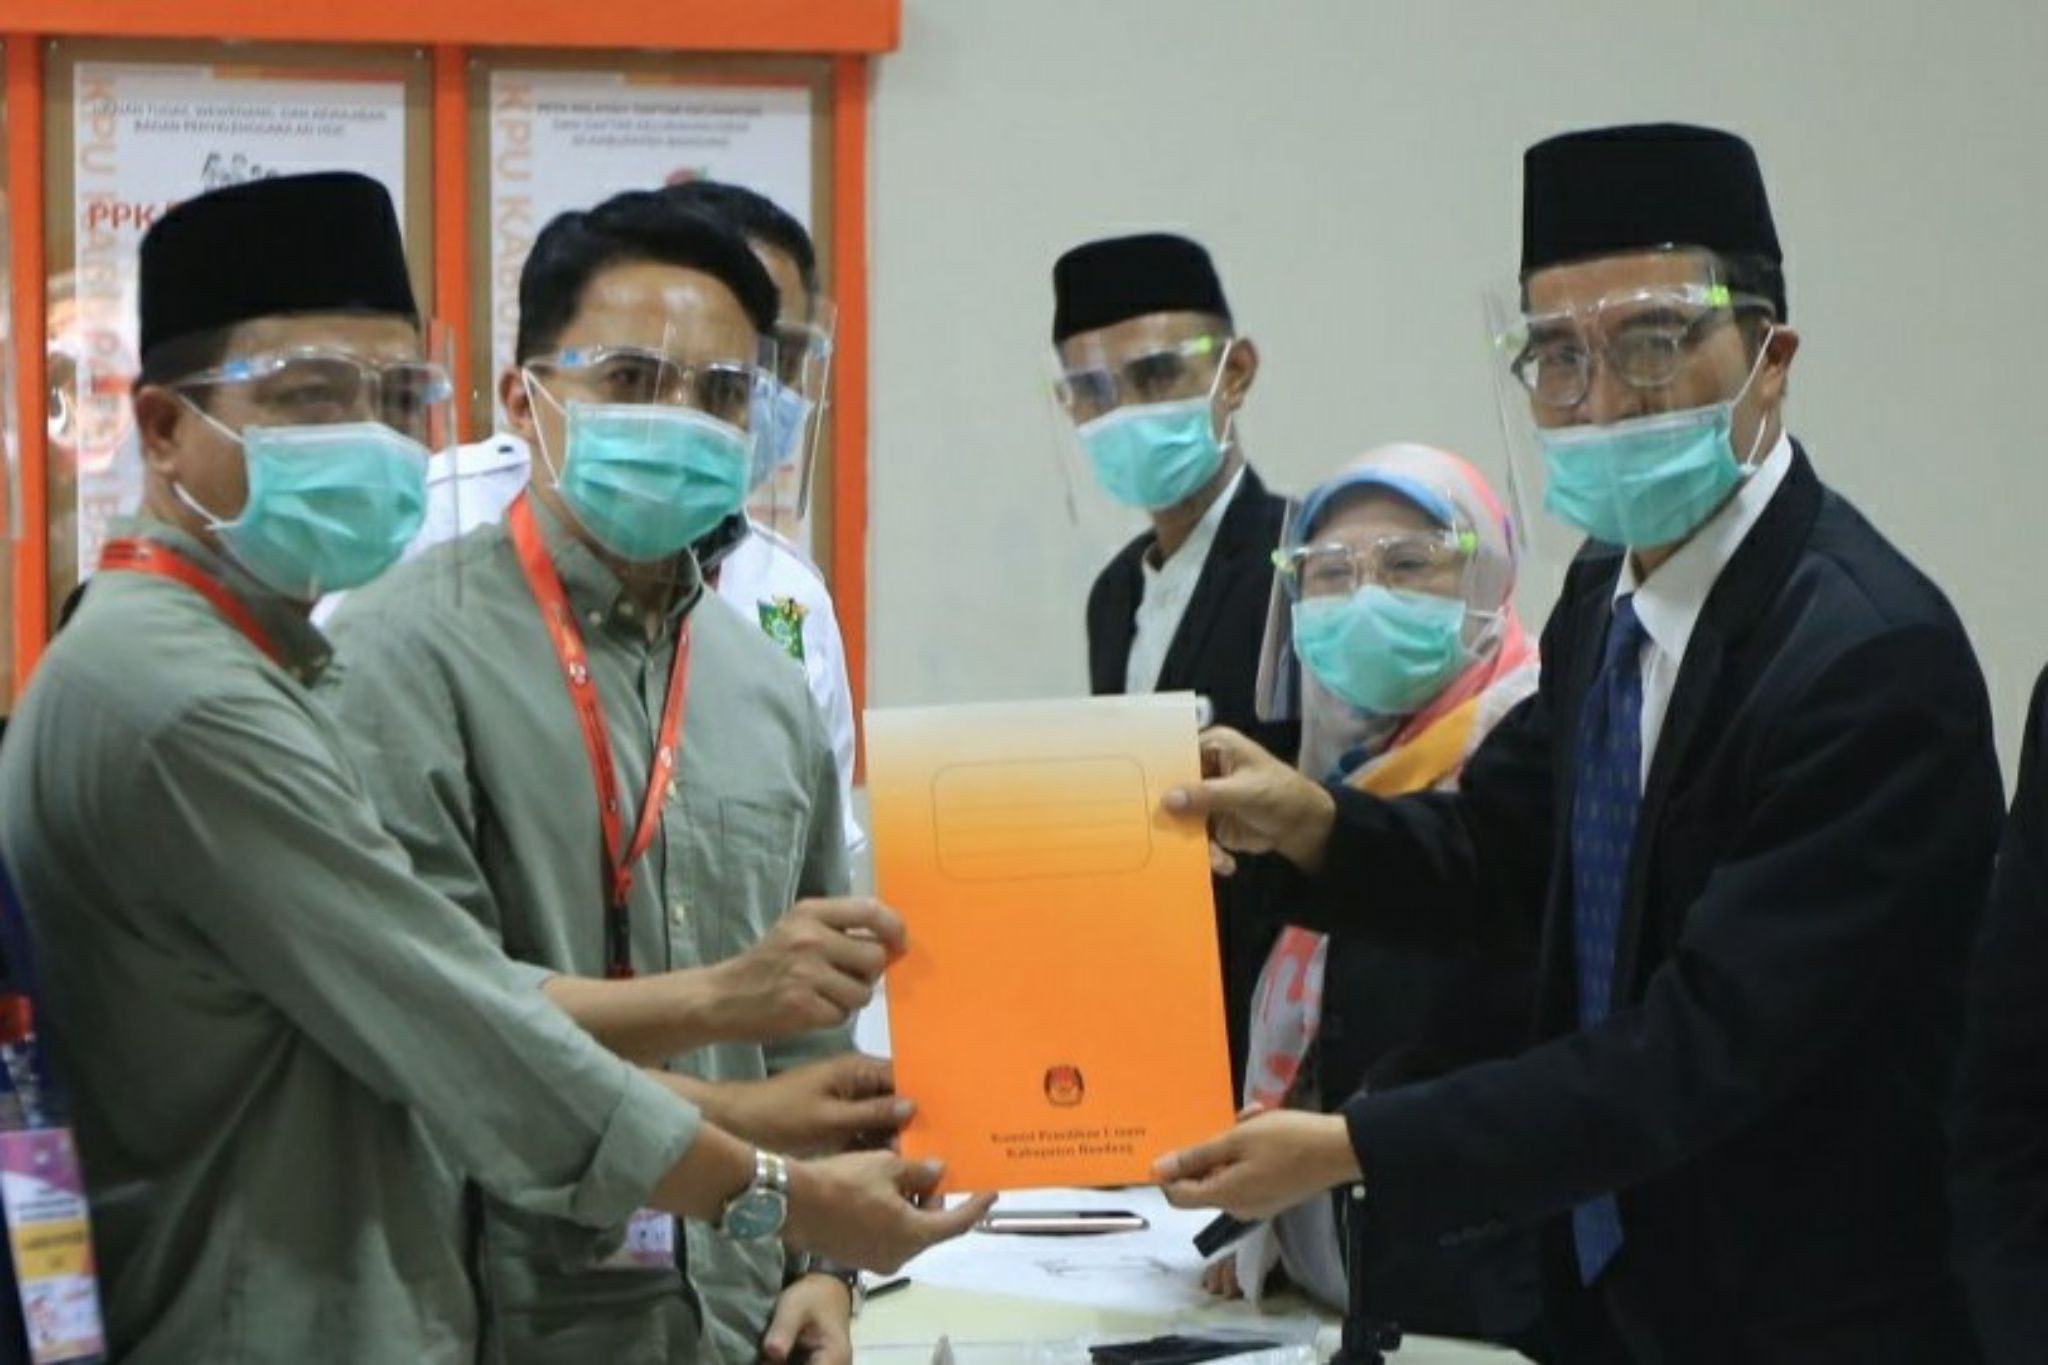 Bakal pasangan calon Bupati dan Wakil Bupati Bandung, Dadang Supriatna dan Sahrul Gunawan menerima surat lolos verifikasi dari Ketua KPU Kabupaten Bandung, Agus Baroya (kanan), di kantor KPU Kabupaten Bandung.